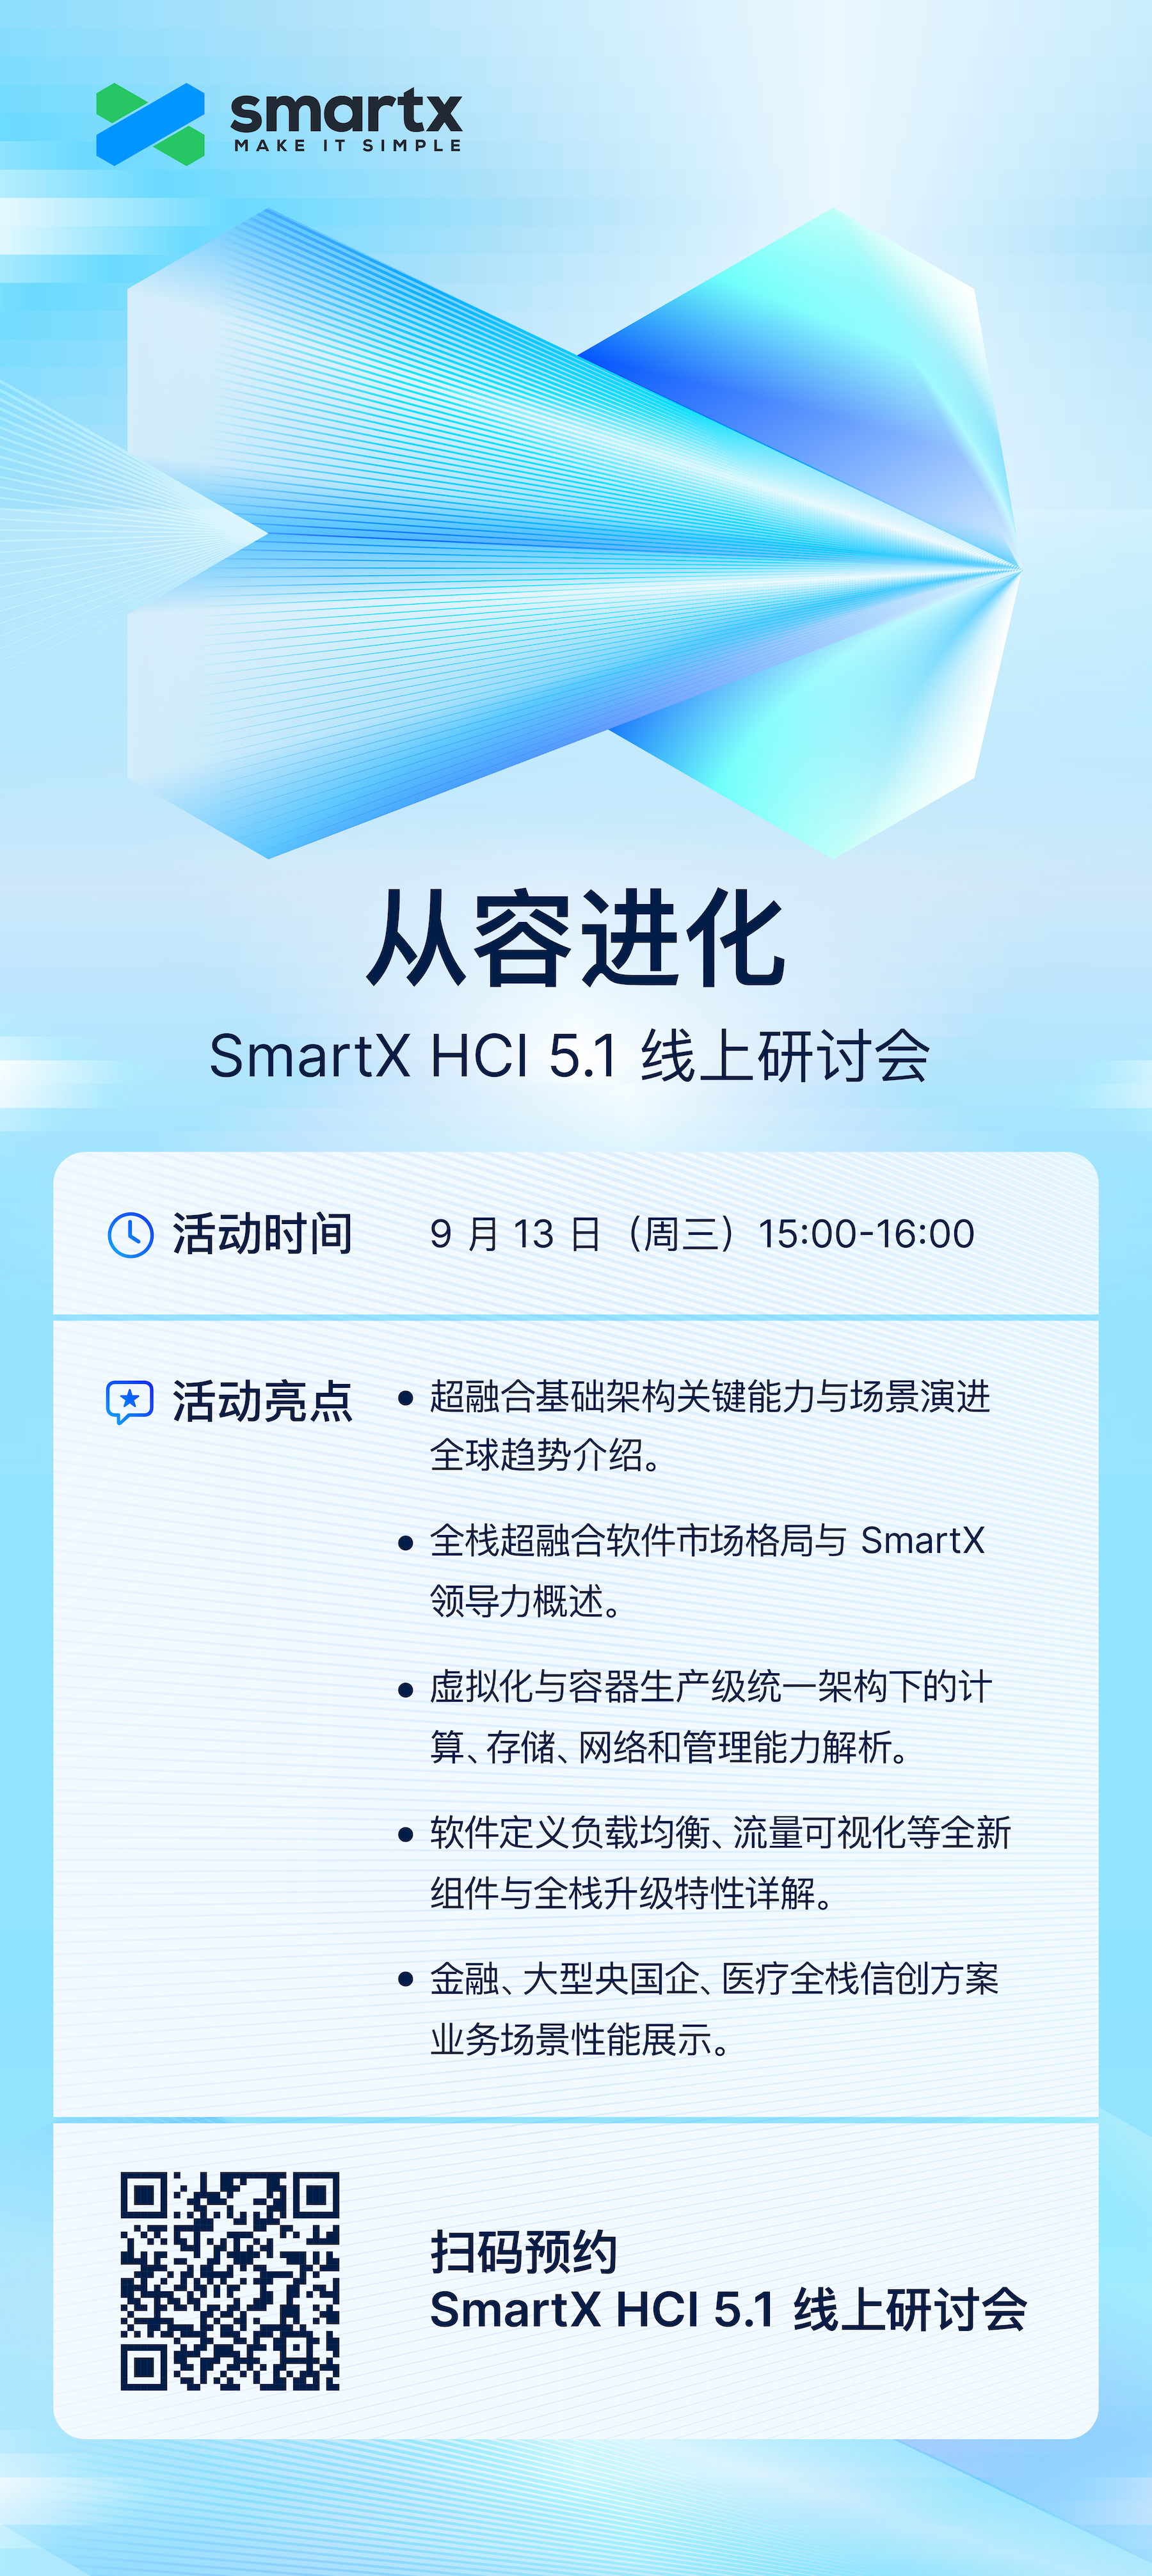 11smartx-hci-5.1-release.jpg